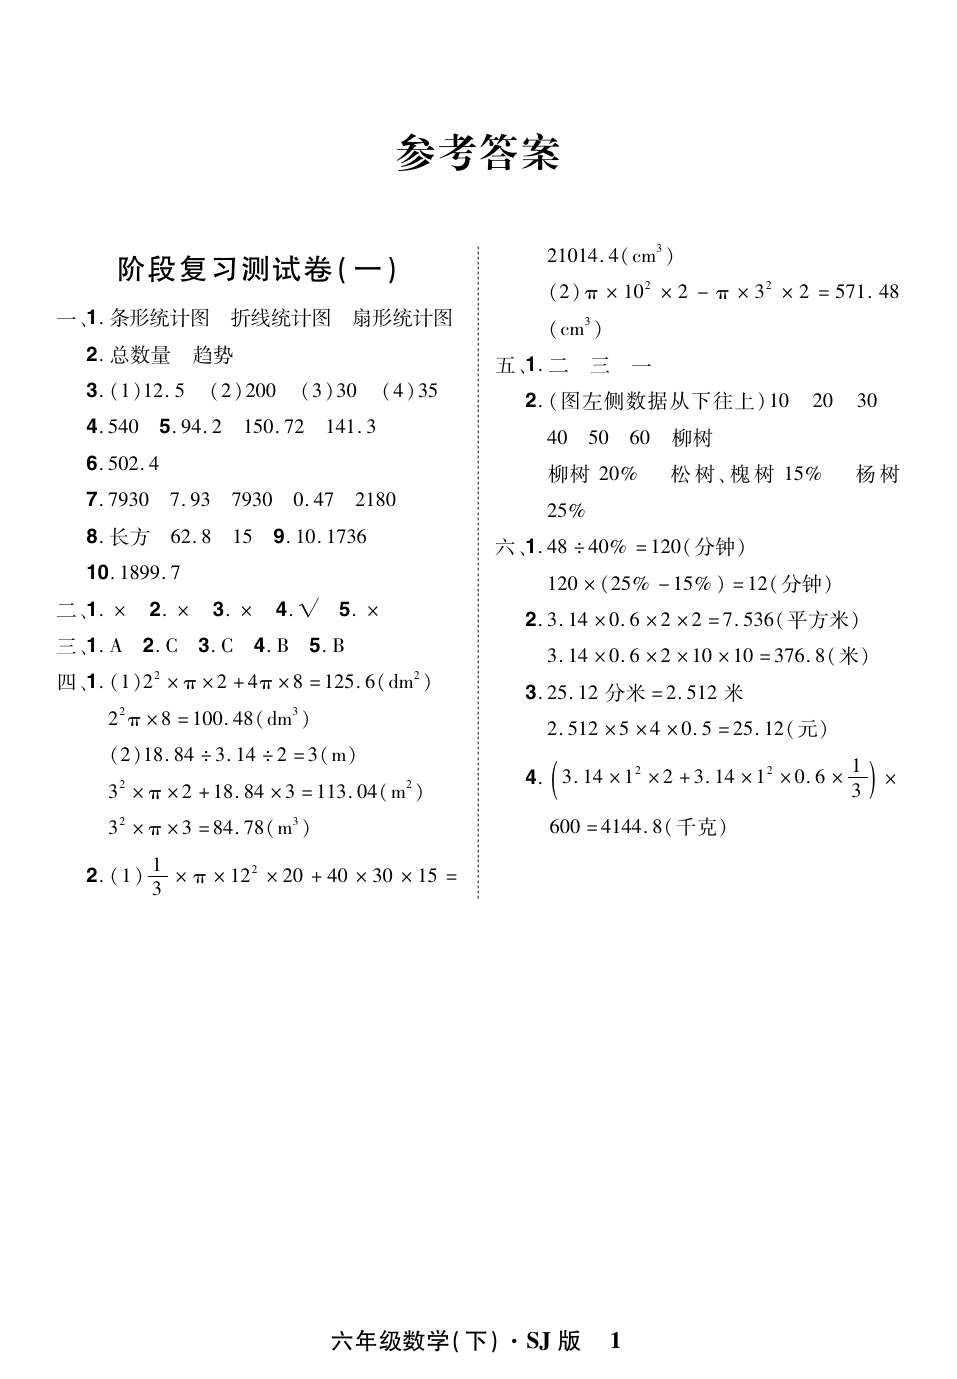 六年级下册数学试题-阶段复习测试卷(一) (第1-2章)( 含答案)苏教版